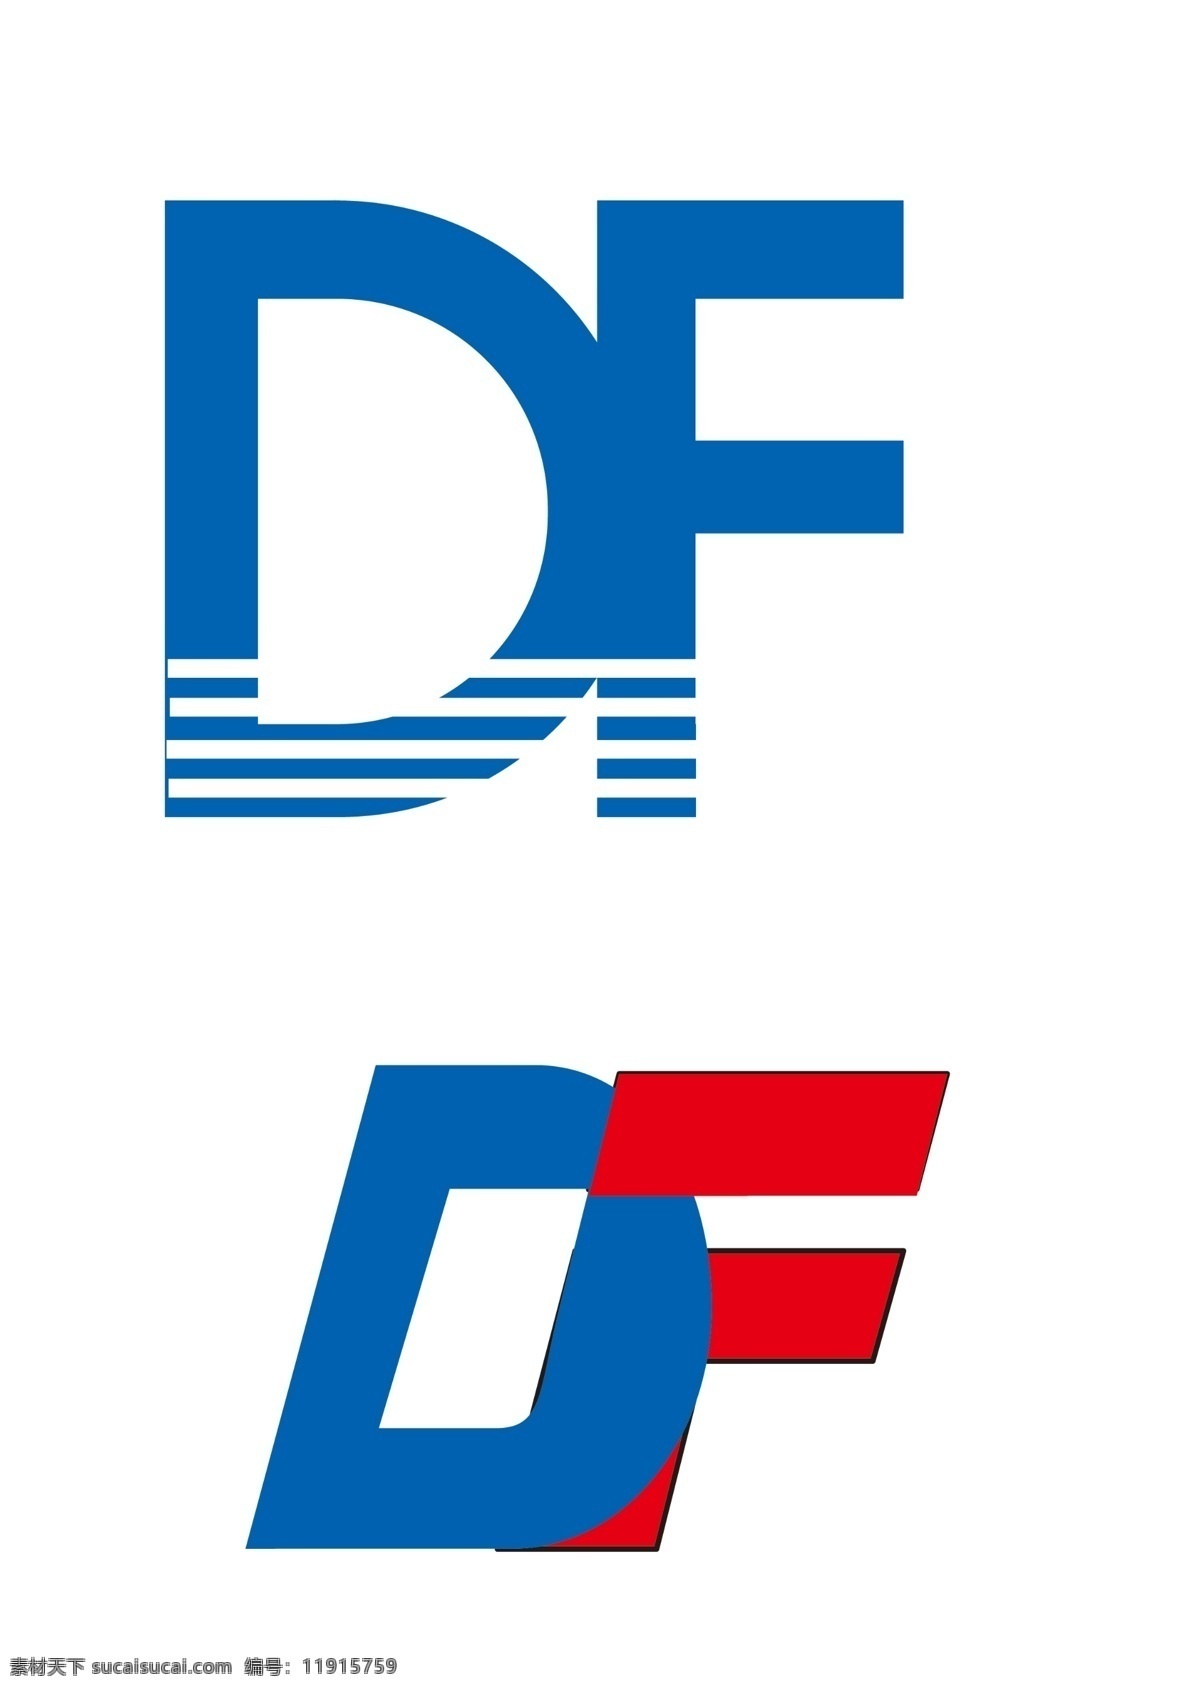 df变形 d f logo 字母变形 df字母组合 英文字母变形 标志图标 企业 标志